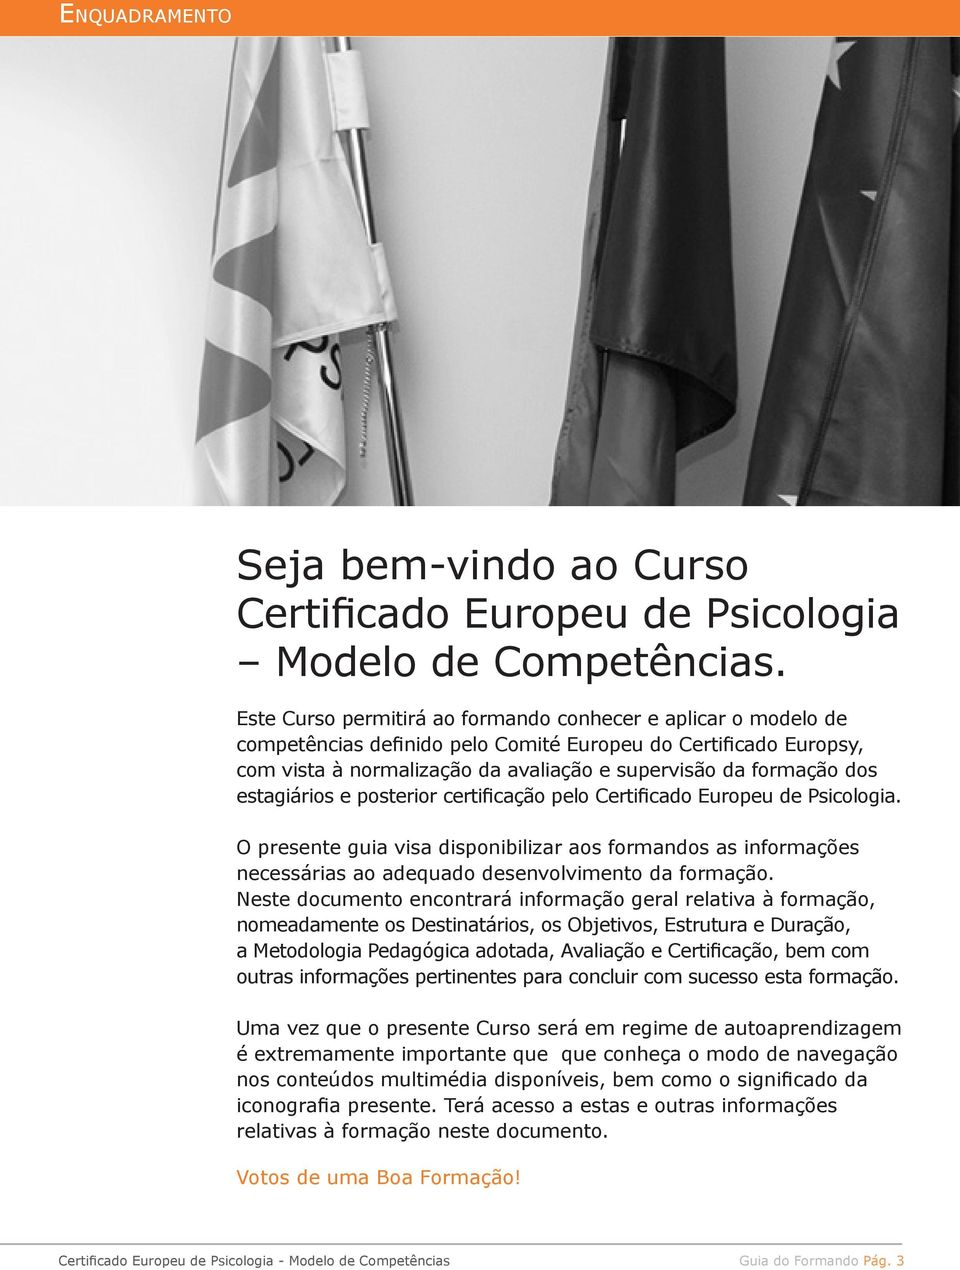 estagiários e posterior certificação pelo Certificado Europeu de Psicologia. O presente guia visa disponibilizar aos formandos as informações necessárias ao adequado desenvolvimento da formação.